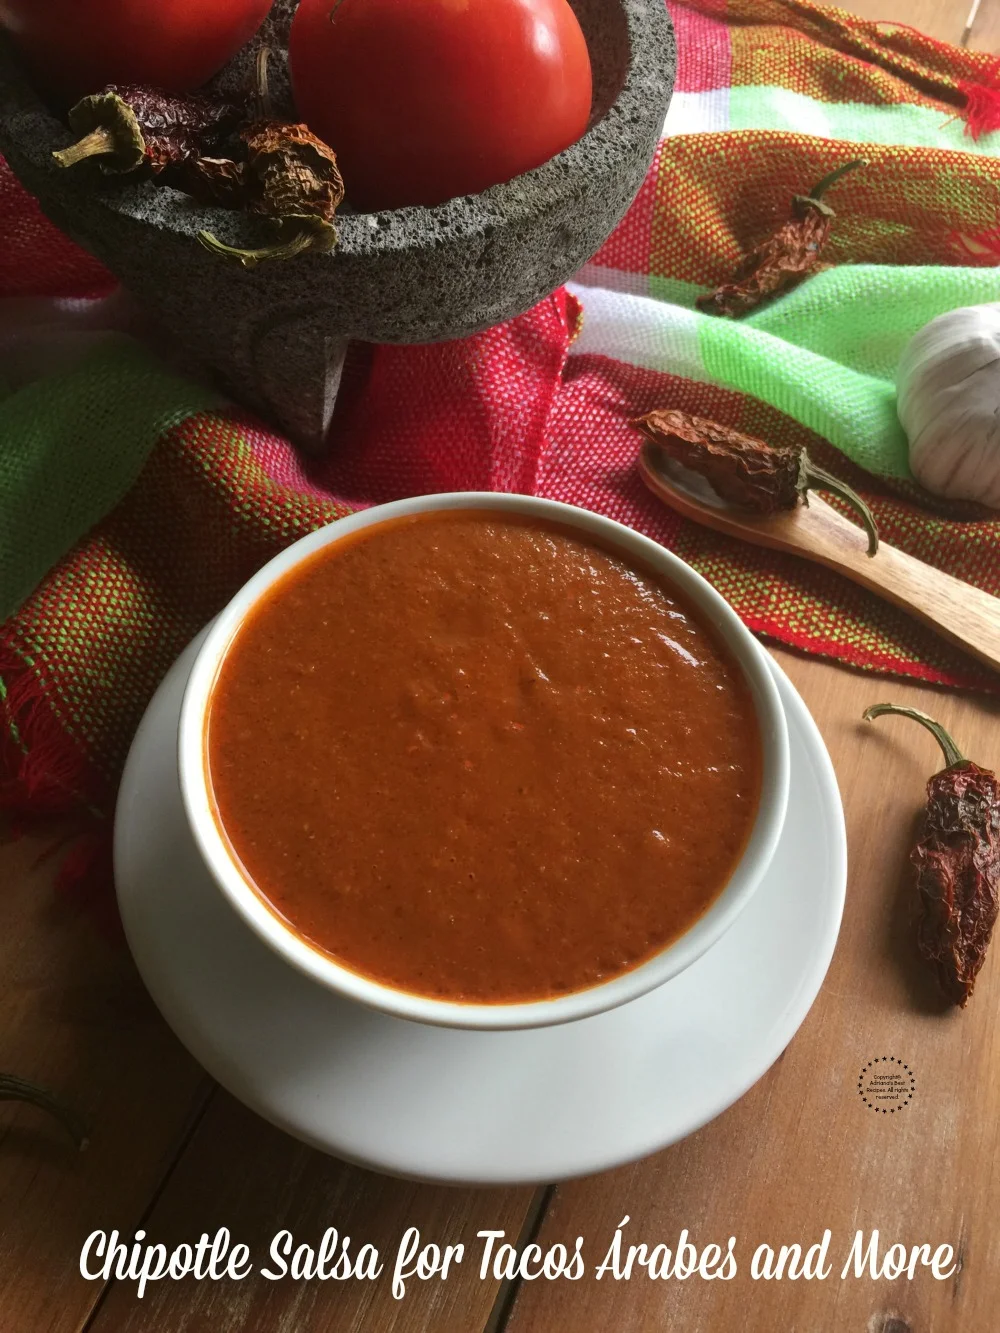 La cocina mexicana tiene una gran variedad de salsas y una de ellas es la famosa salsa de chile chipotle. Utilizada principalmente para los tacos árabes